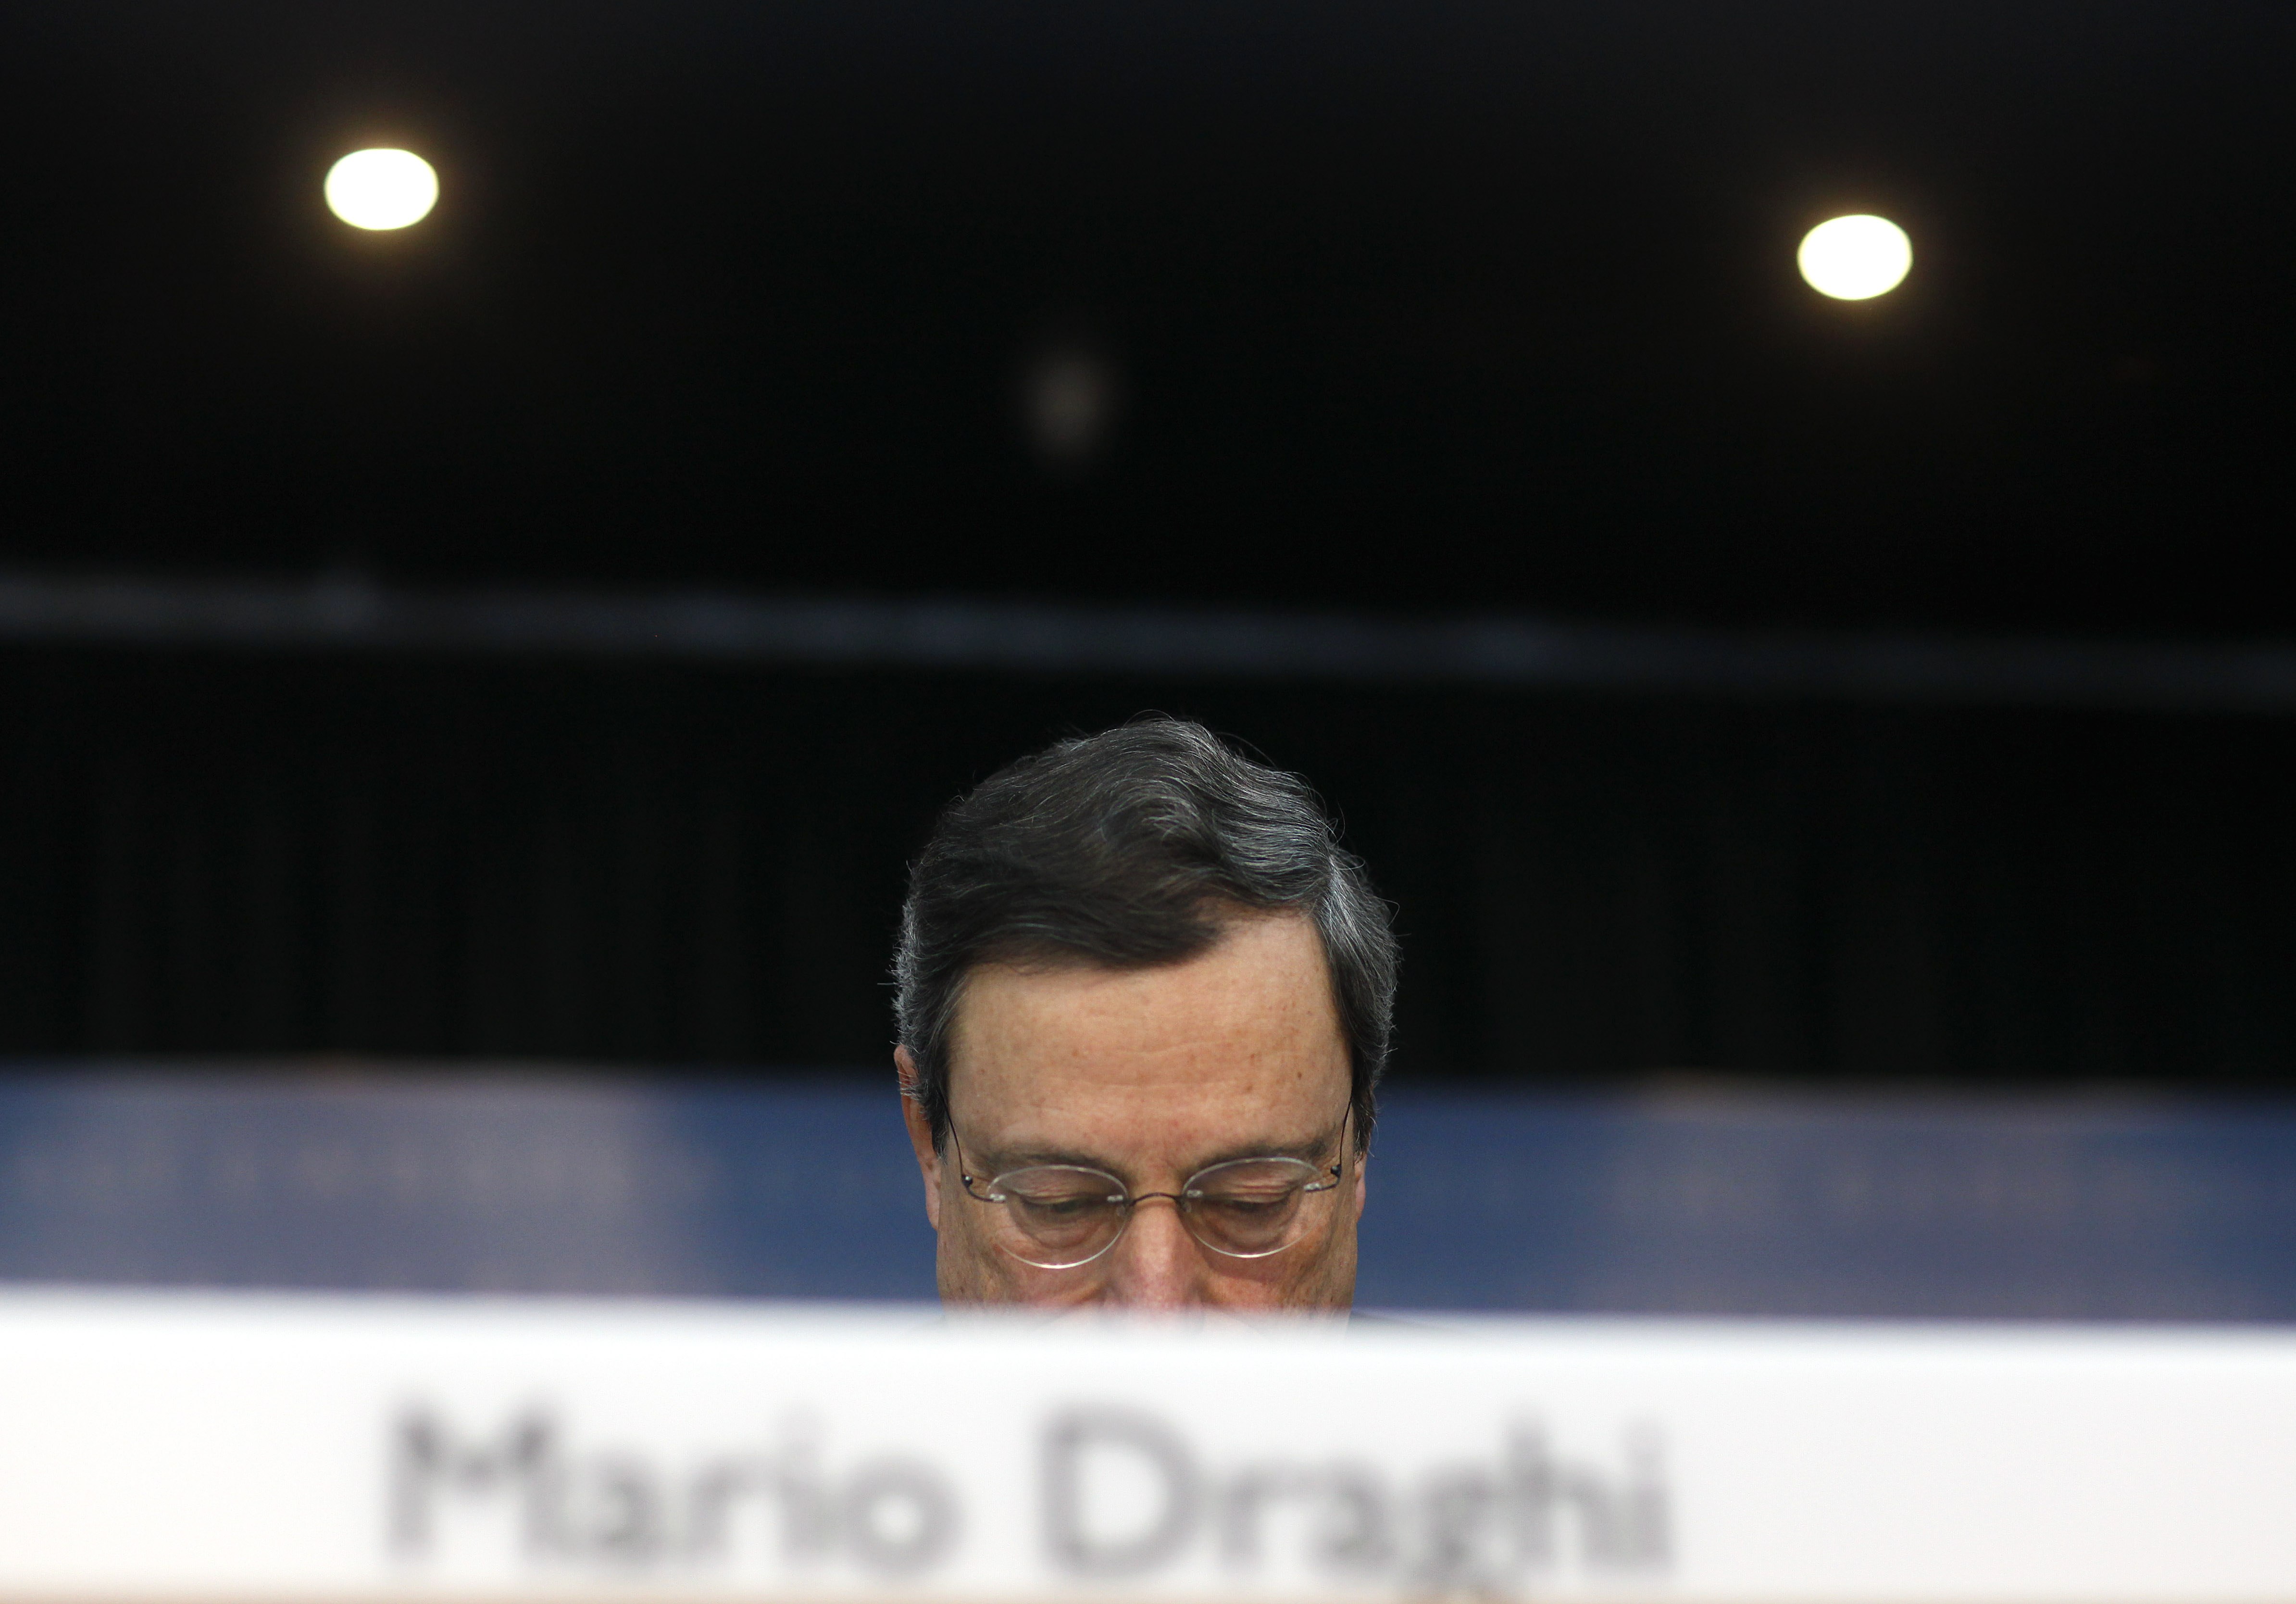 Η αγορά ομολόγων από την ΕΚΤ δεν μπορεί να συνεχισθεί επ' άπειρον, λέει ο Μάριο Ντράγκι